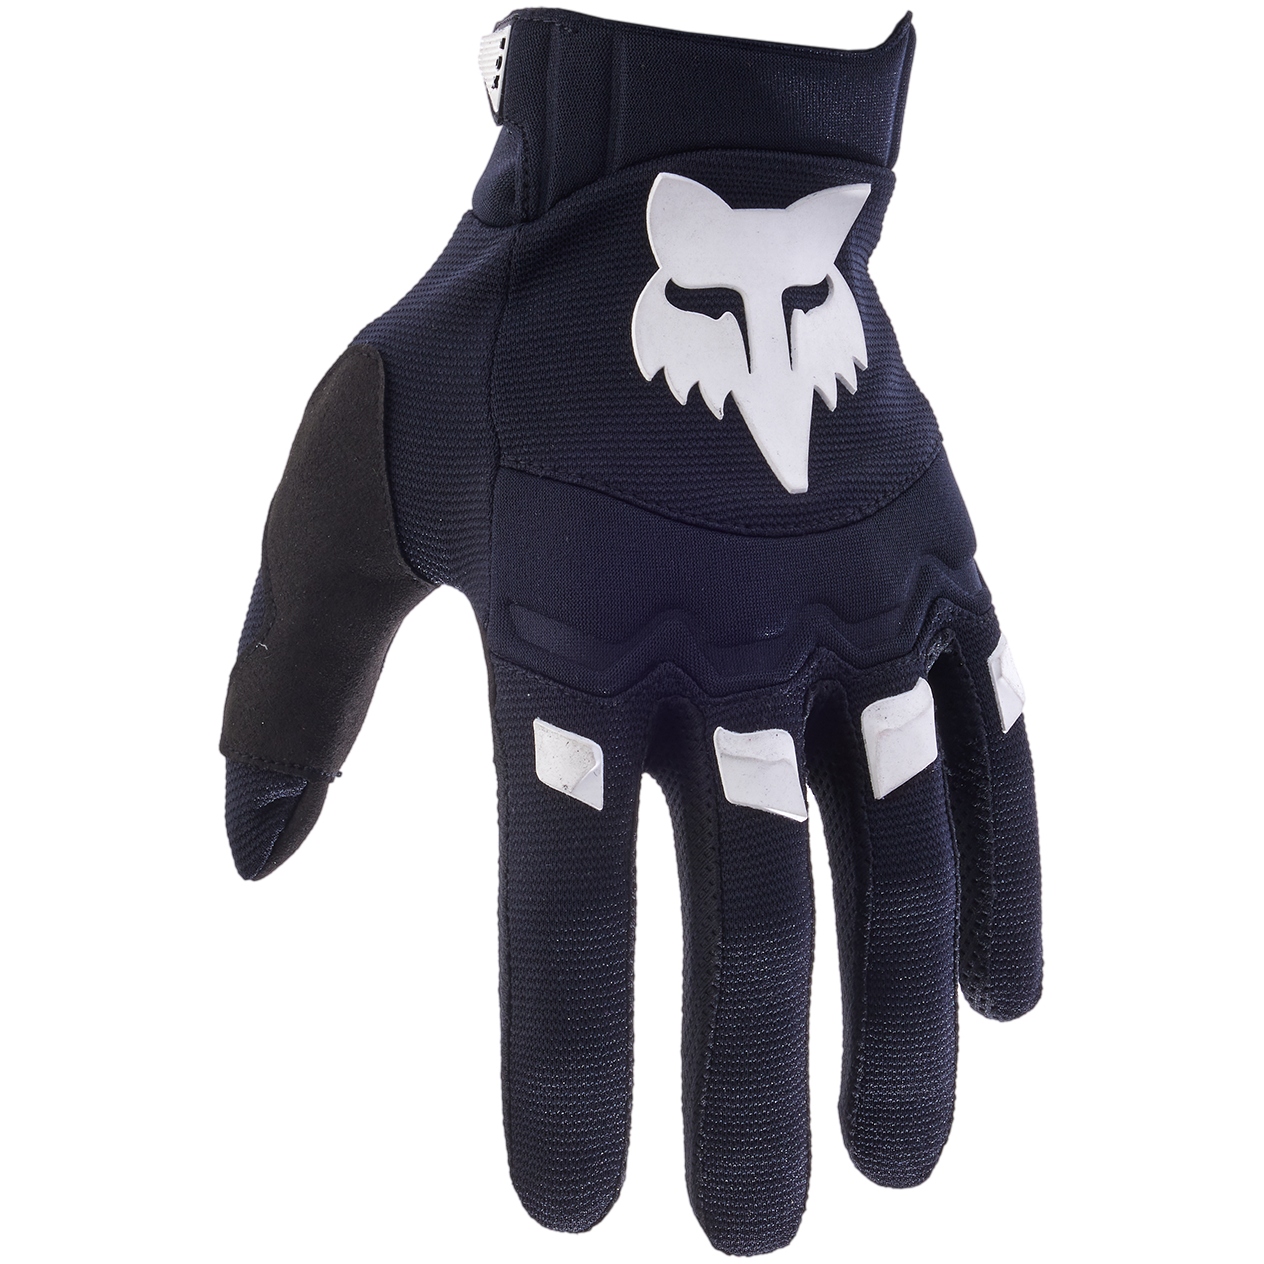 Produktbild von FOX Dirtpaw MTB Handschuhe - schwarz/weiß